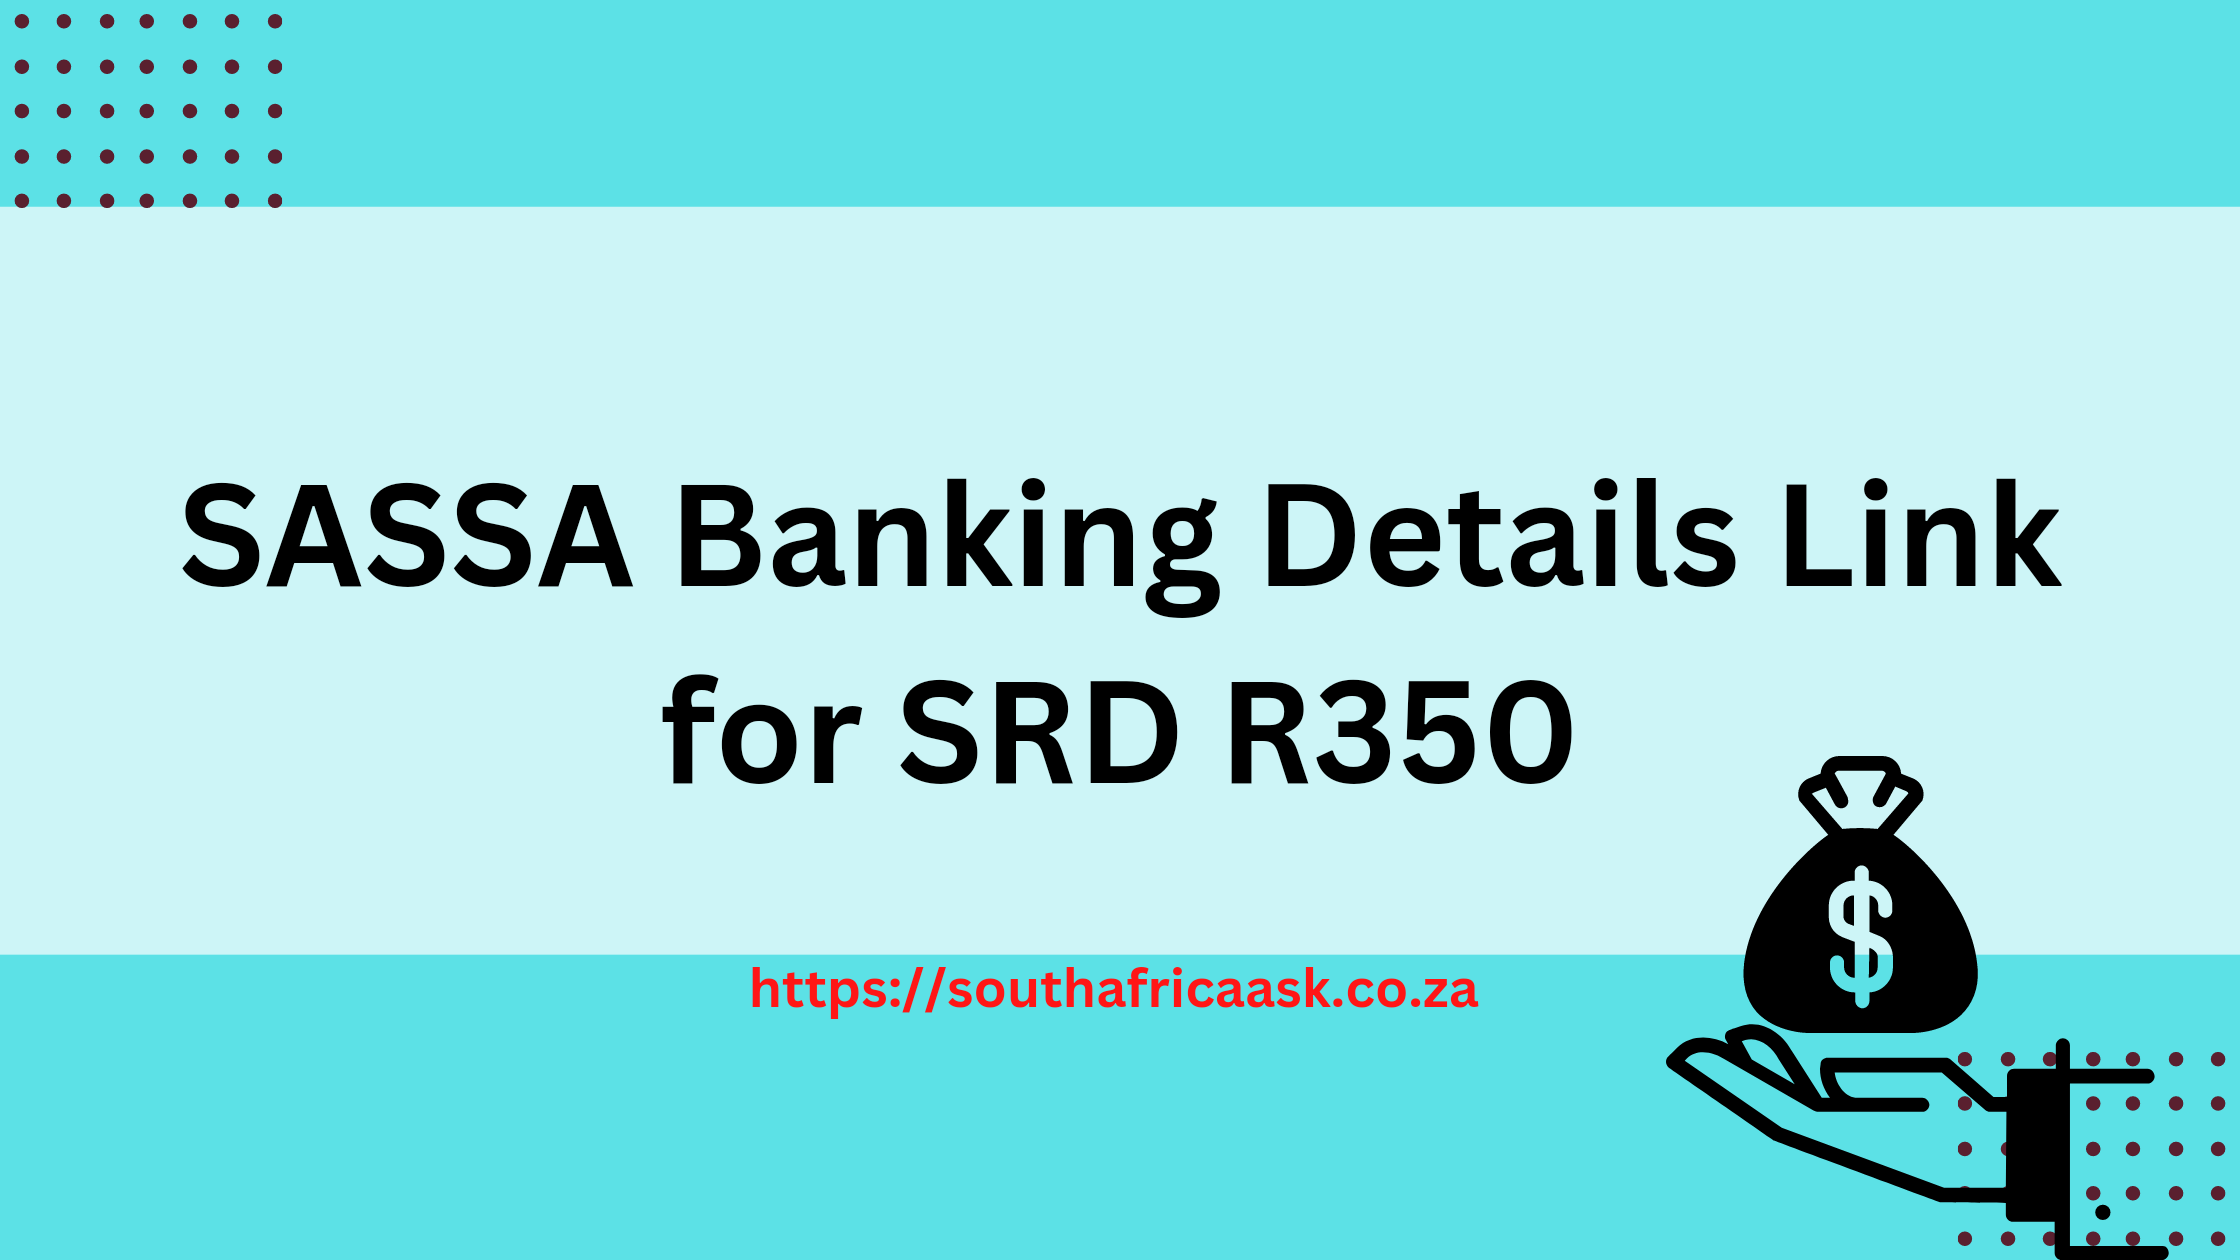 SASSA Banking Details Link for SRD R350